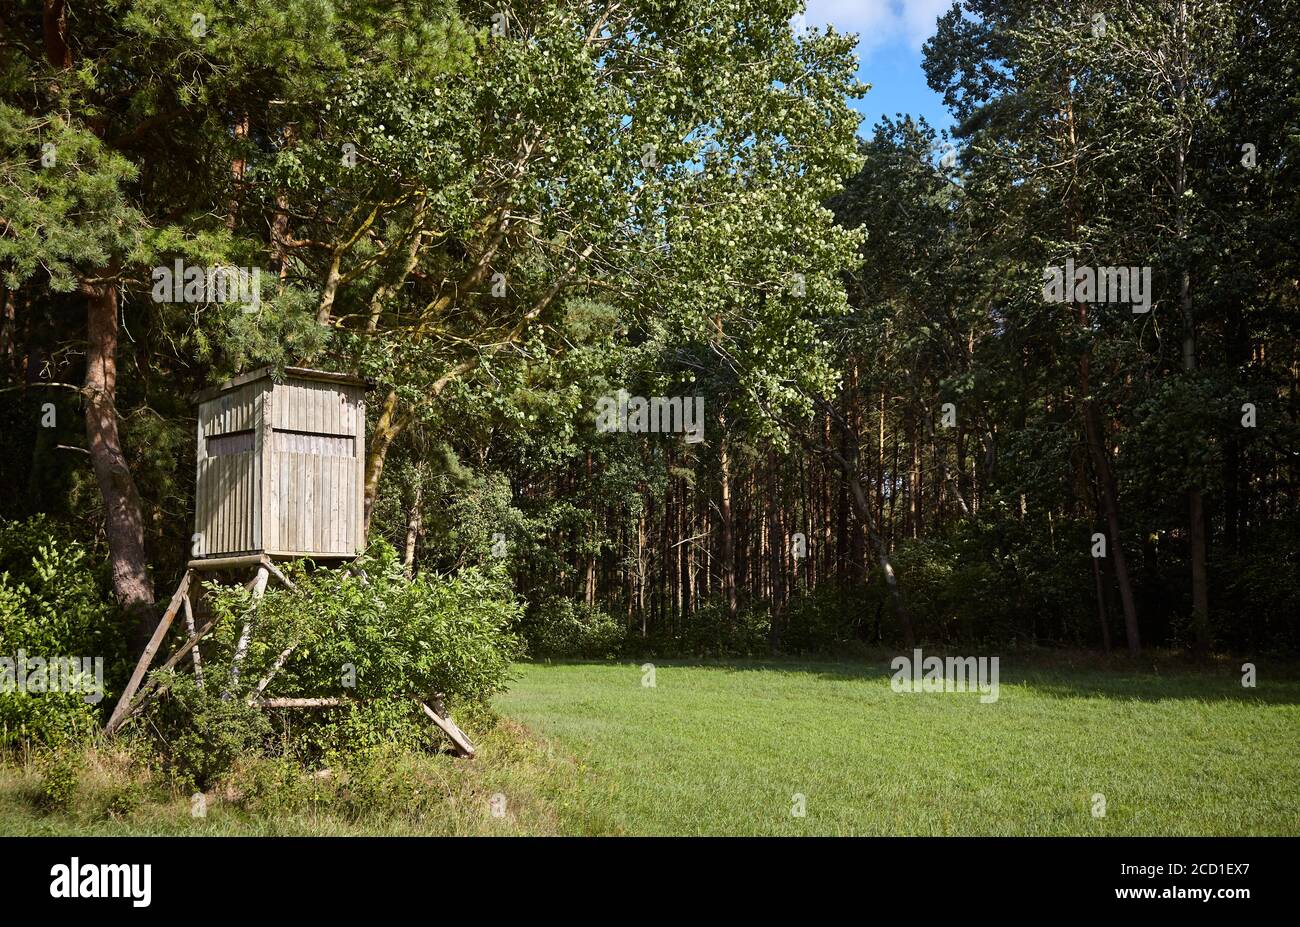 Stand de cerf en bois (chasse aveugle) au bord de la forêt. Banque D'Images